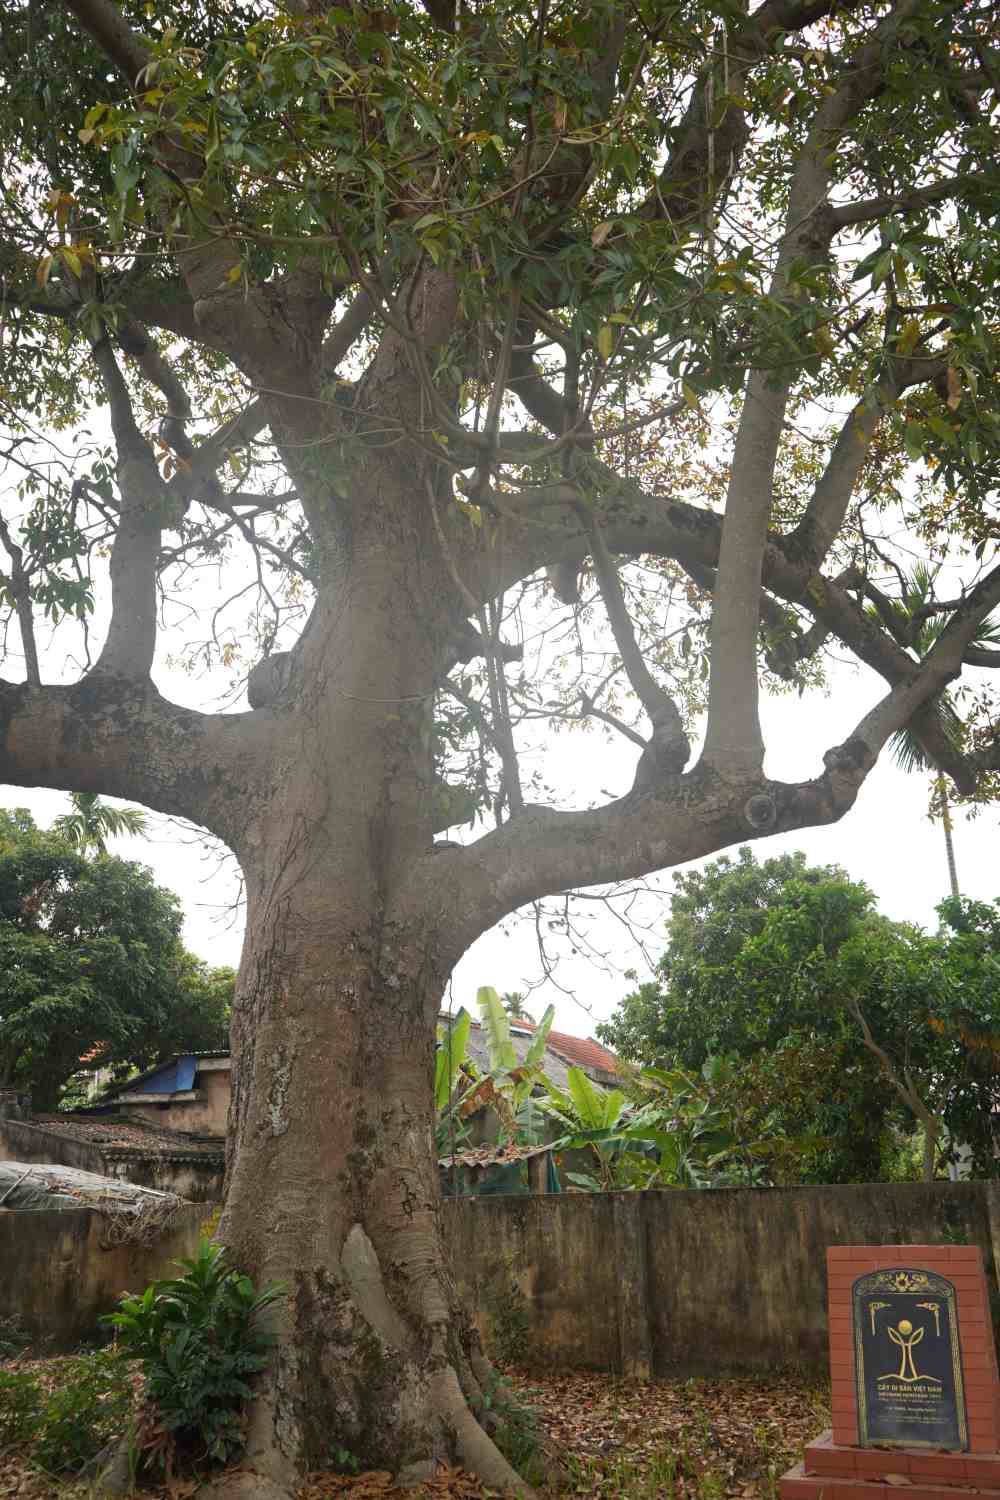 Ngày 4/9/2013, Hội bảo vệ thiên nhiên và môi trường Việt Nam đã có quyết định công nhận cây Trôm (có tên khoa học là Sterculia foetidaL) trong quần thể di tích lịch sử văn hóa Đình, Miếu xã Nghĩa Lộ là cây di sản Việt Nam. Đây là cây xanh đầu tiên trên địa bàn huyện được công nhận là cây di sản.